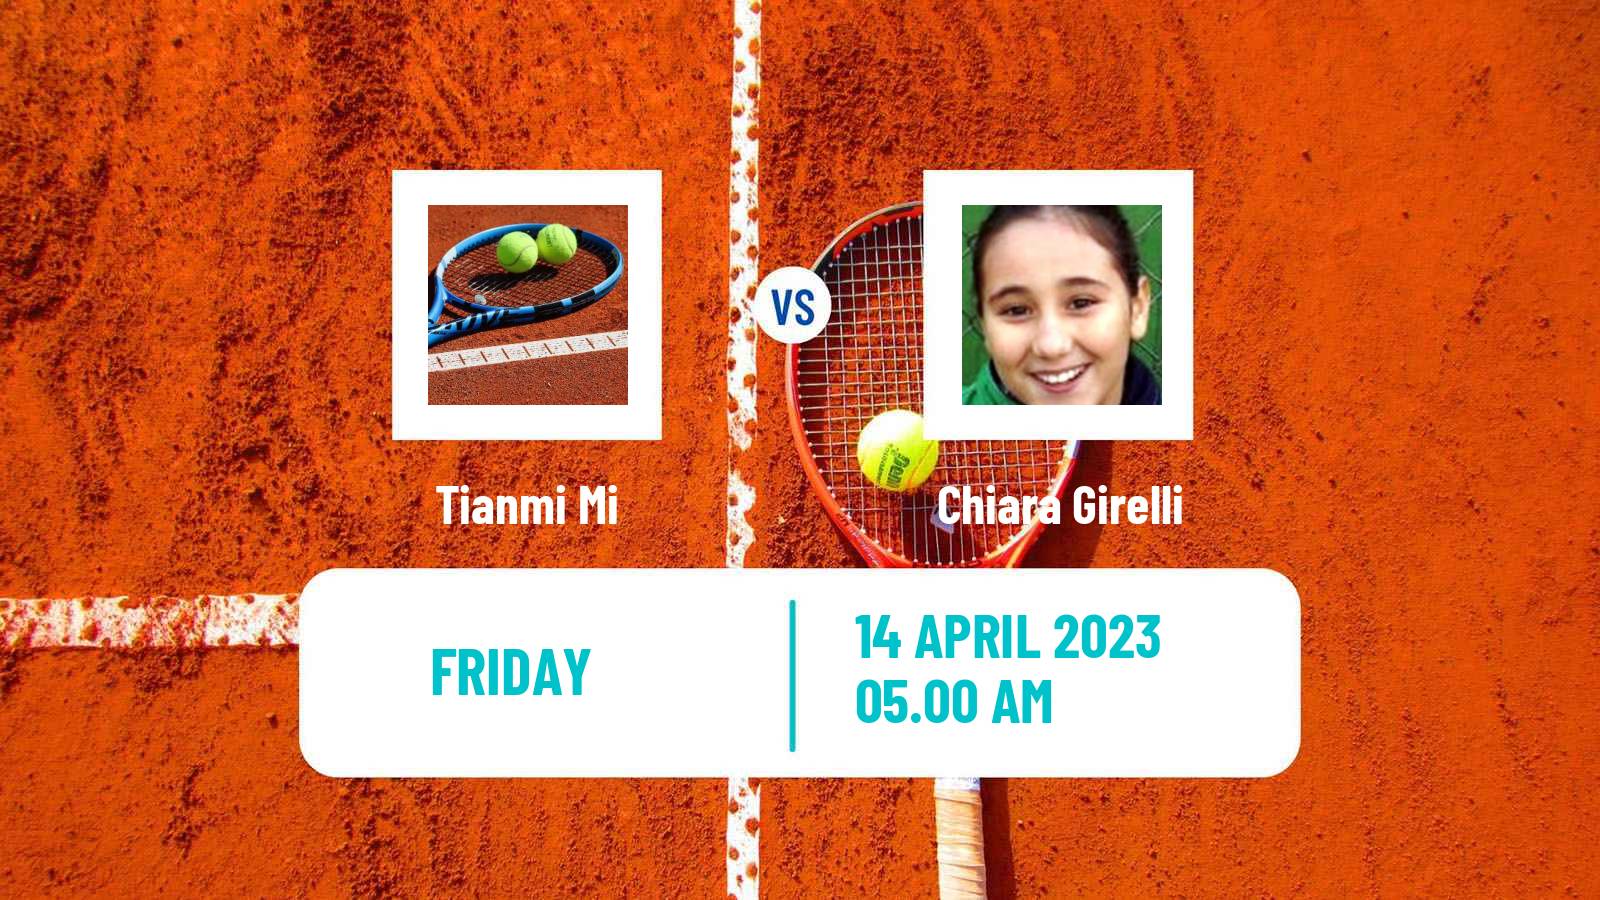 Tennis ITF Tournaments Tianmi Mi - Chiara Girelli